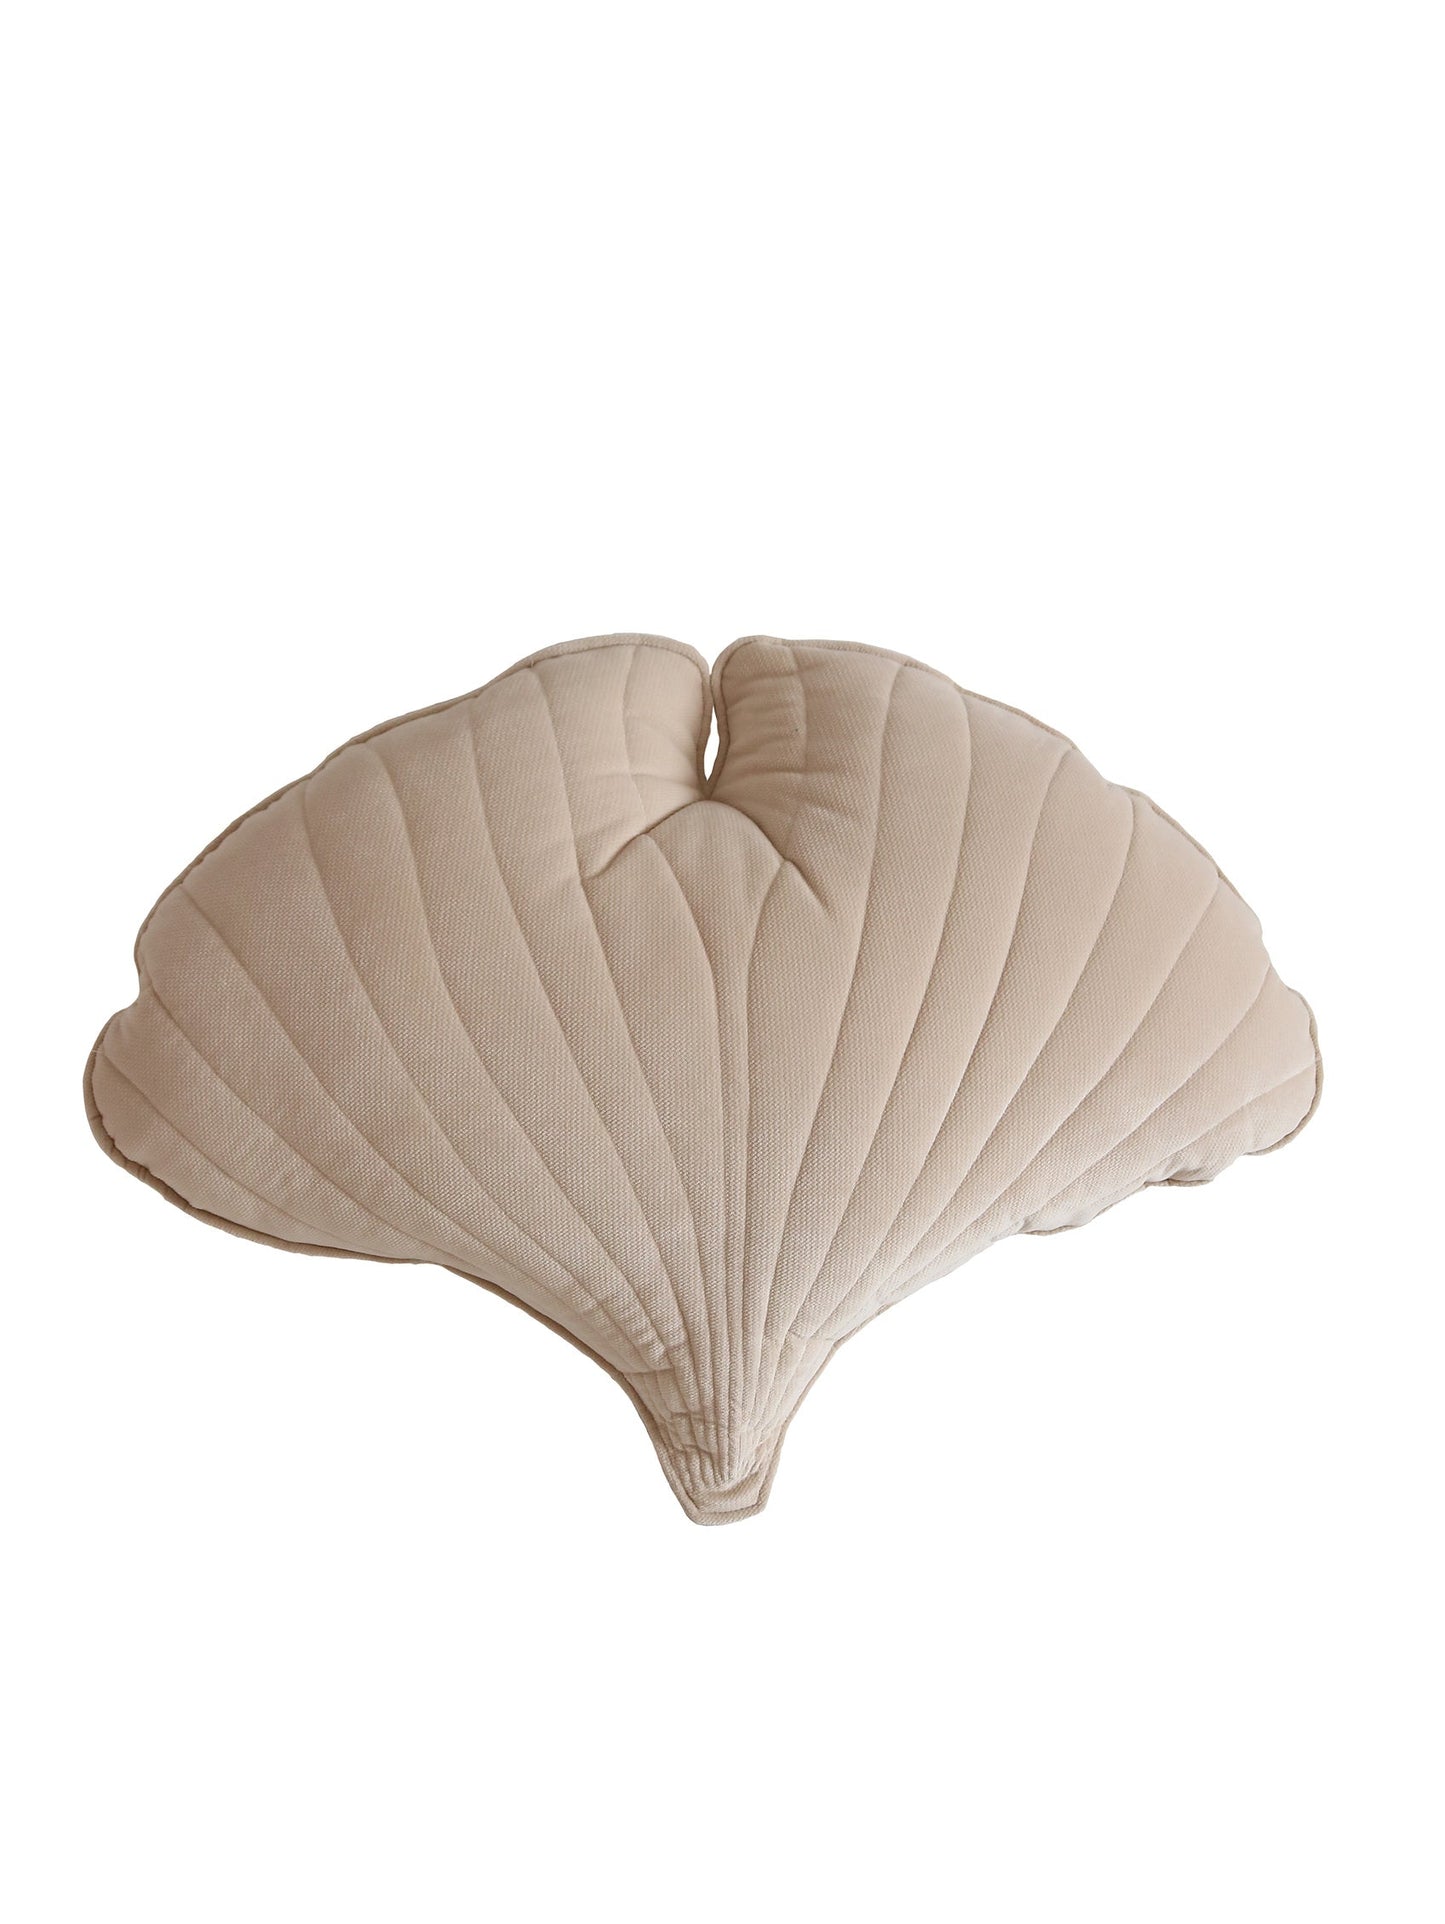 Velvet “Cream” Ginkgo Leaf Pillow